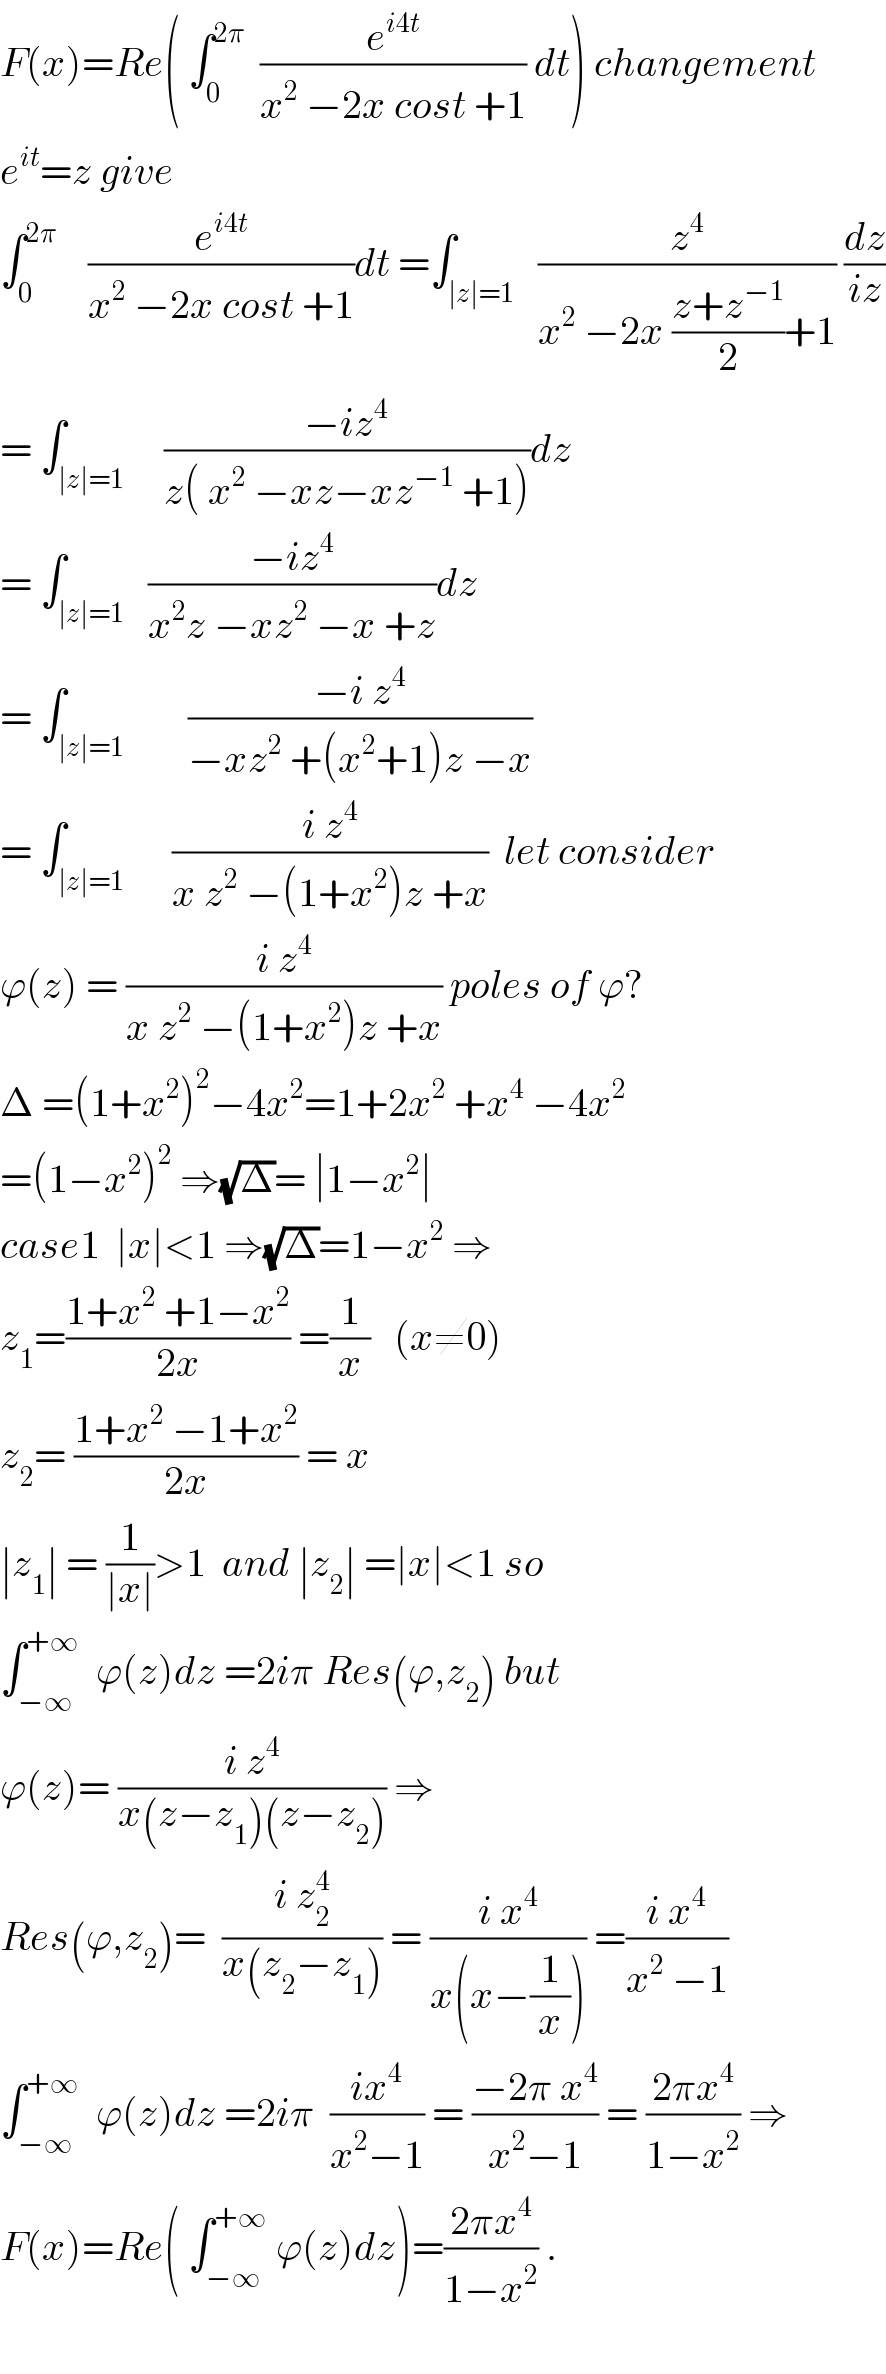 F(x)=Re( ∫_0 ^(2π)   (e^(i4t) /(x^2  −2x cost +1)) dt) changement  e^(it) =z give   ∫_0 ^(2π)     (e^(i4t) /(x^2  −2x cost +1))dt =∫_(∣z∣=1)   (z^4 /(x^2  −2x ((z+z^(−1) )/2)+1)) (dz/(iz))  = ∫_(∣z∣=1)     ((−iz^4 )/(z( x^2  −xz−xz^(−1)  +1)))dz  = ∫_(∣z∣=1)   ((−iz^4 )/(x^2 z −xz^2  −x +z))dz  = ∫_(∣z∣=1)        ((−i z^4 )/(−xz^2  +(x^2 +1)z −x))  = ∫_(∣z∣=1)      ((i z^4 )/(x z^2  −(1+x^2 )z +x))  let consider  ϕ(z) = ((i z^4 )/(x z^2  −(1+x^2 )z +x)) poles of ϕ?  Δ =(1+x^2 )^2 −4x^2 =1+2x^2  +x^4  −4x^2   =(1−x^2 )^2  ⇒(√Δ)= ∣1−x^2 ∣  case1  ∣x∣<1 ⇒(√Δ)=1−x^2  ⇒  z_1 =((1+x^2  +1−x^2 )/(2x)) =(1/x)   (x≠0)  z_2 = ((1+x^2  −1+x^2 )/(2x)) = x  ∣z_1 ∣ = (1/(∣x∣))>1  and ∣z_2 ∣ =∣x∣<1 so  ∫_(−∞) ^(+∞)   ϕ(z)dz =2iπ Res(ϕ,z_2 ) but   ϕ(z)= ((i z^4 )/(x(z−z_1 )(z−z_2 ))) ⇒  Res(ϕ,z_2 )=  ((i z_2 ^4 )/(x(z_2 −z_1 ))) = ((i x^4 )/(x(x−(1/x)))) =((i x^4 )/(x^2  −1))  ∫_(−∞) ^(+∞)   ϕ(z)dz =2iπ  ((ix^4 )/(x^2 −1)) = ((−2π x^4 )/(x^2 −1)) = ((2πx^4 )/(1−x^2 )) ⇒  F(x)=Re( ∫_(−∞) ^(+∞)  ϕ(z)dz)=((2πx^4 )/(1−x^2 )) .    